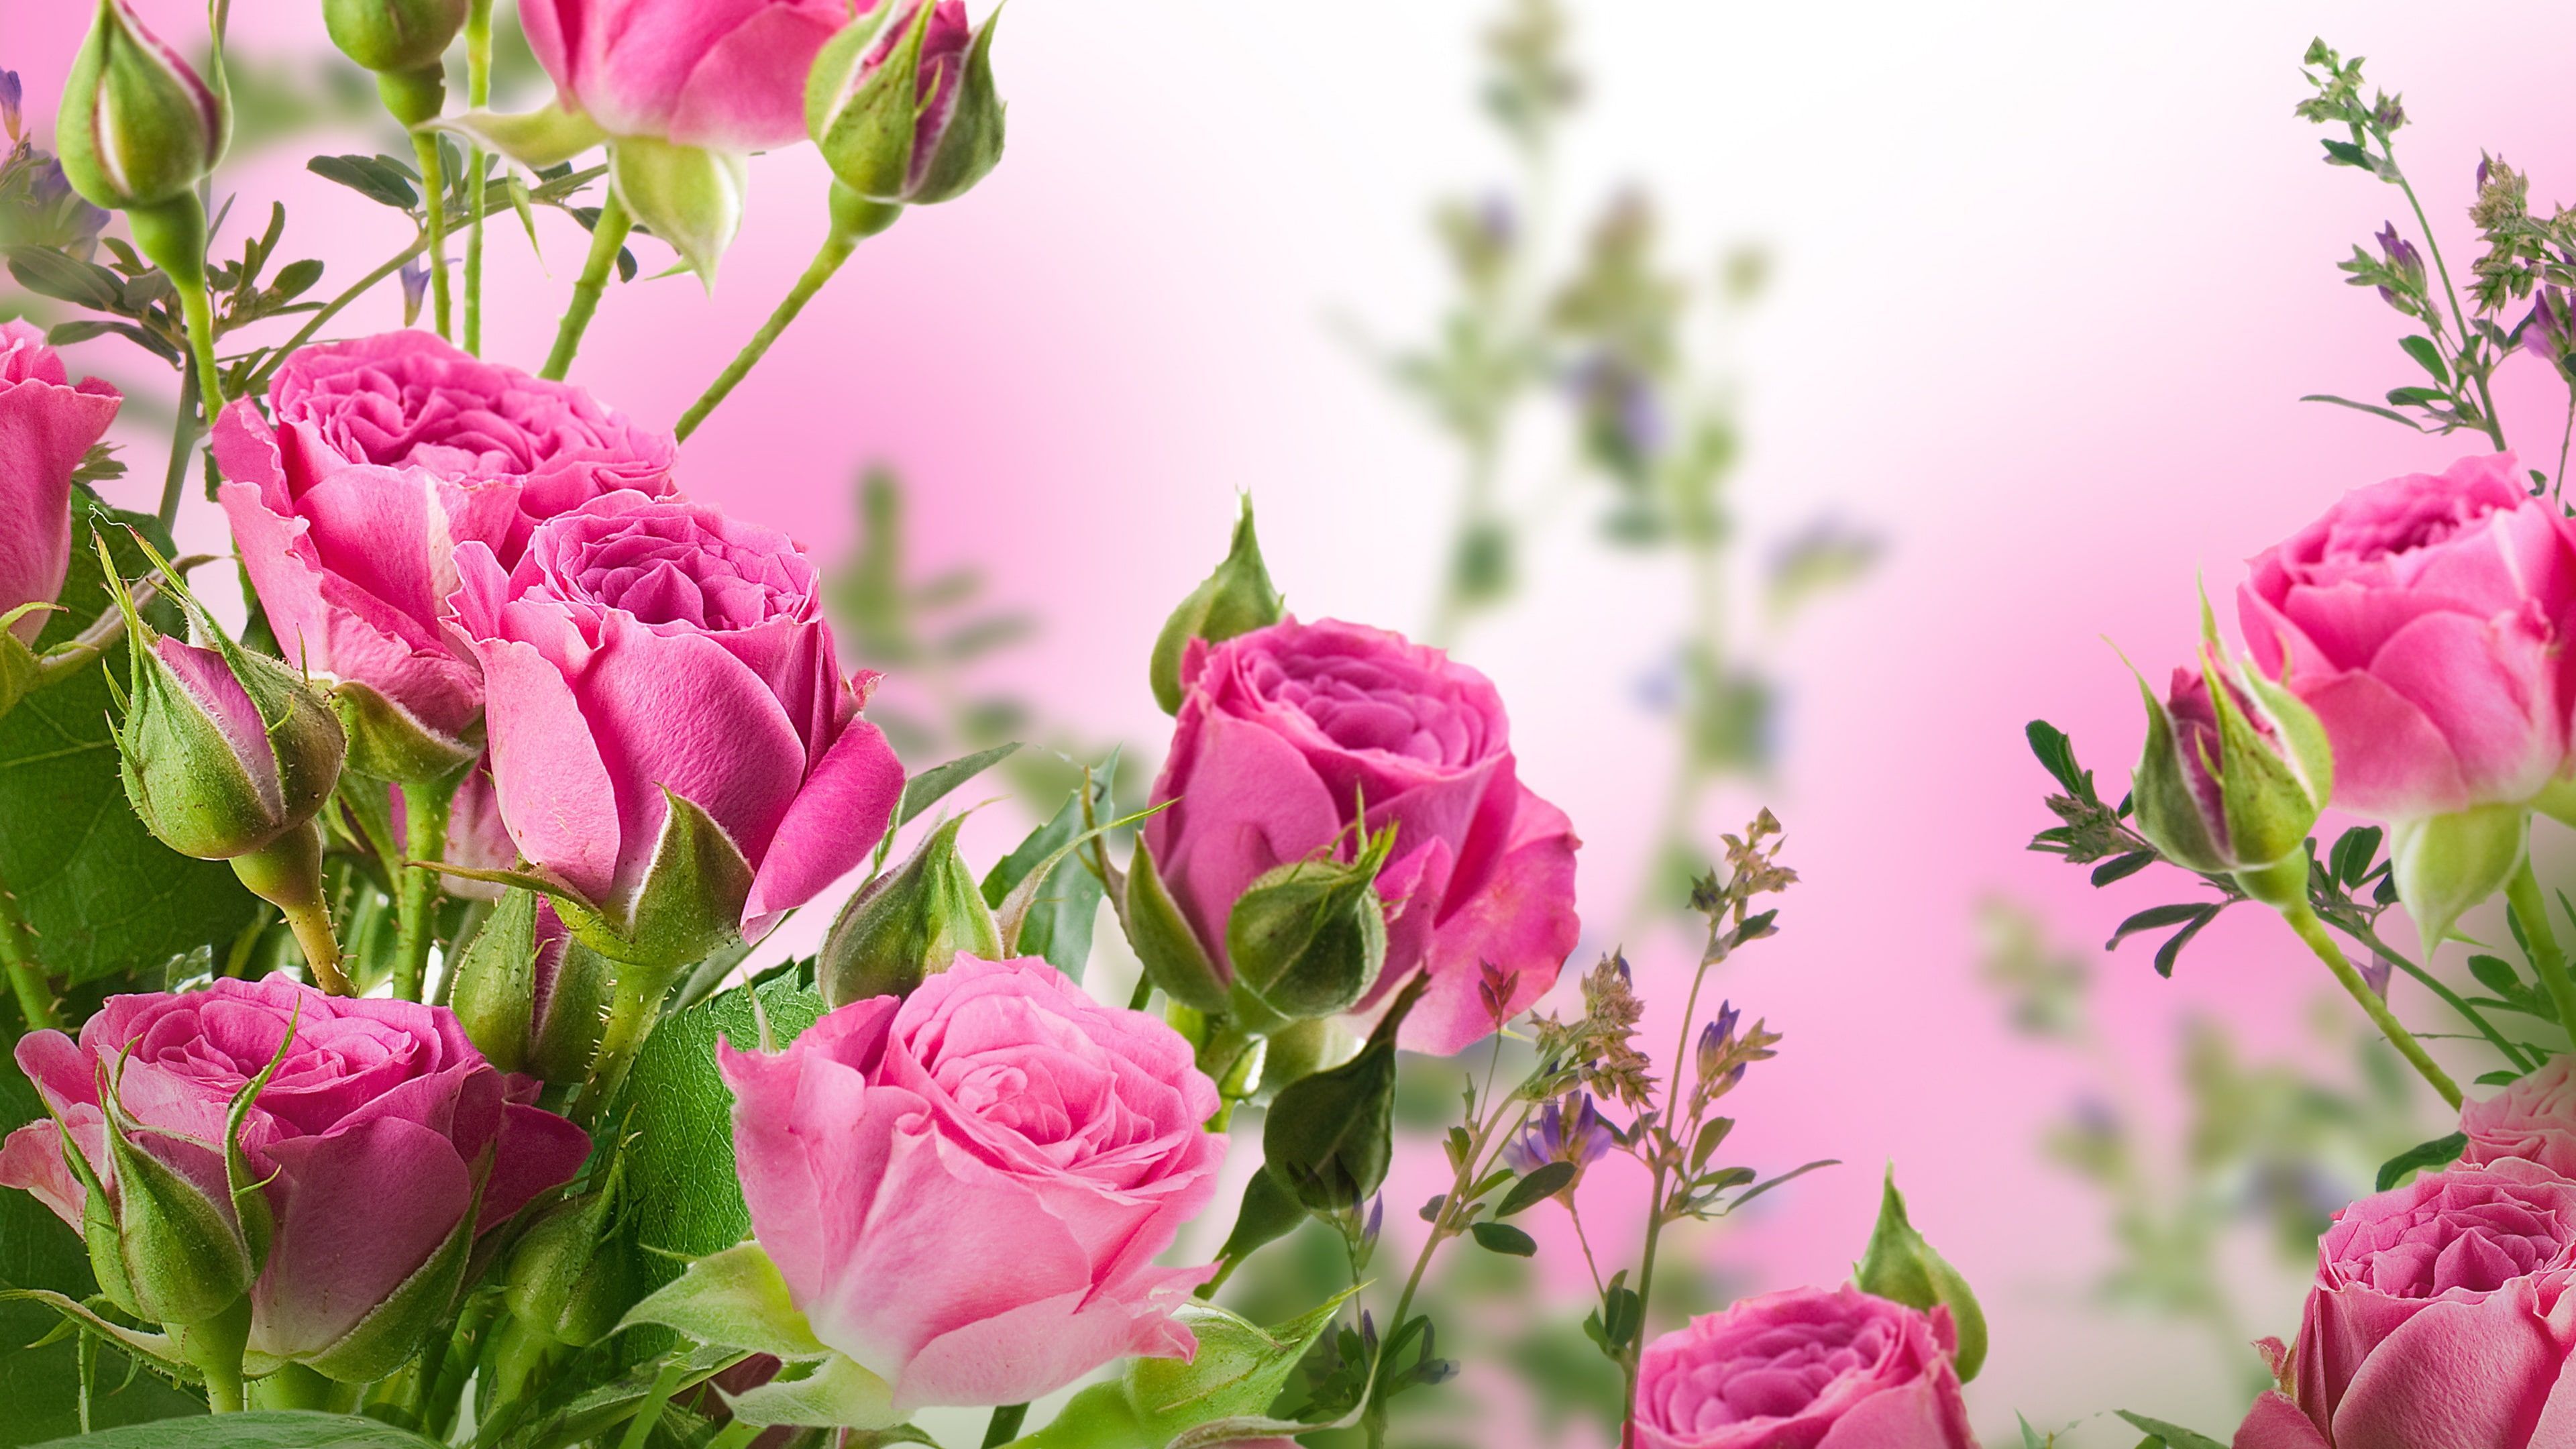 Pink rose flowers, garden #Pink #Rose #Flowers #Garden K #wallpaper #hdwallpaper #desktop. Rose wallpaper, Pink rose flower, Flowers